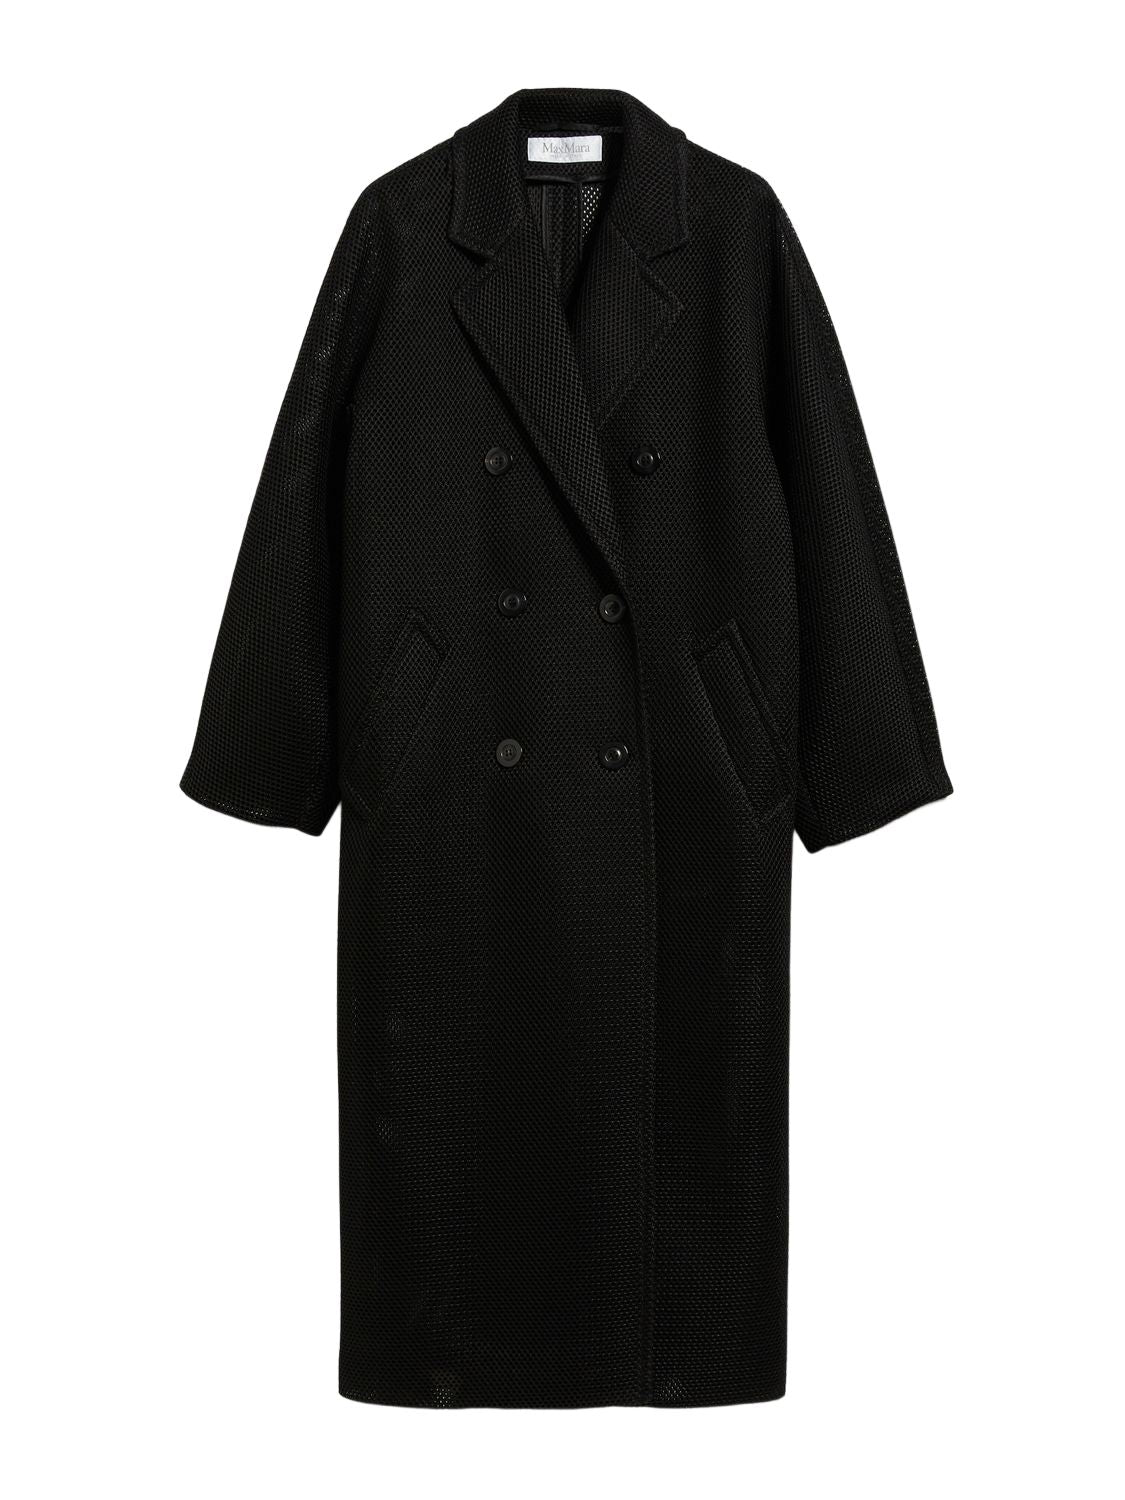 Áo khoác đen cổ điển cho phụ nữ - Nổi bật trong mùa FW23!